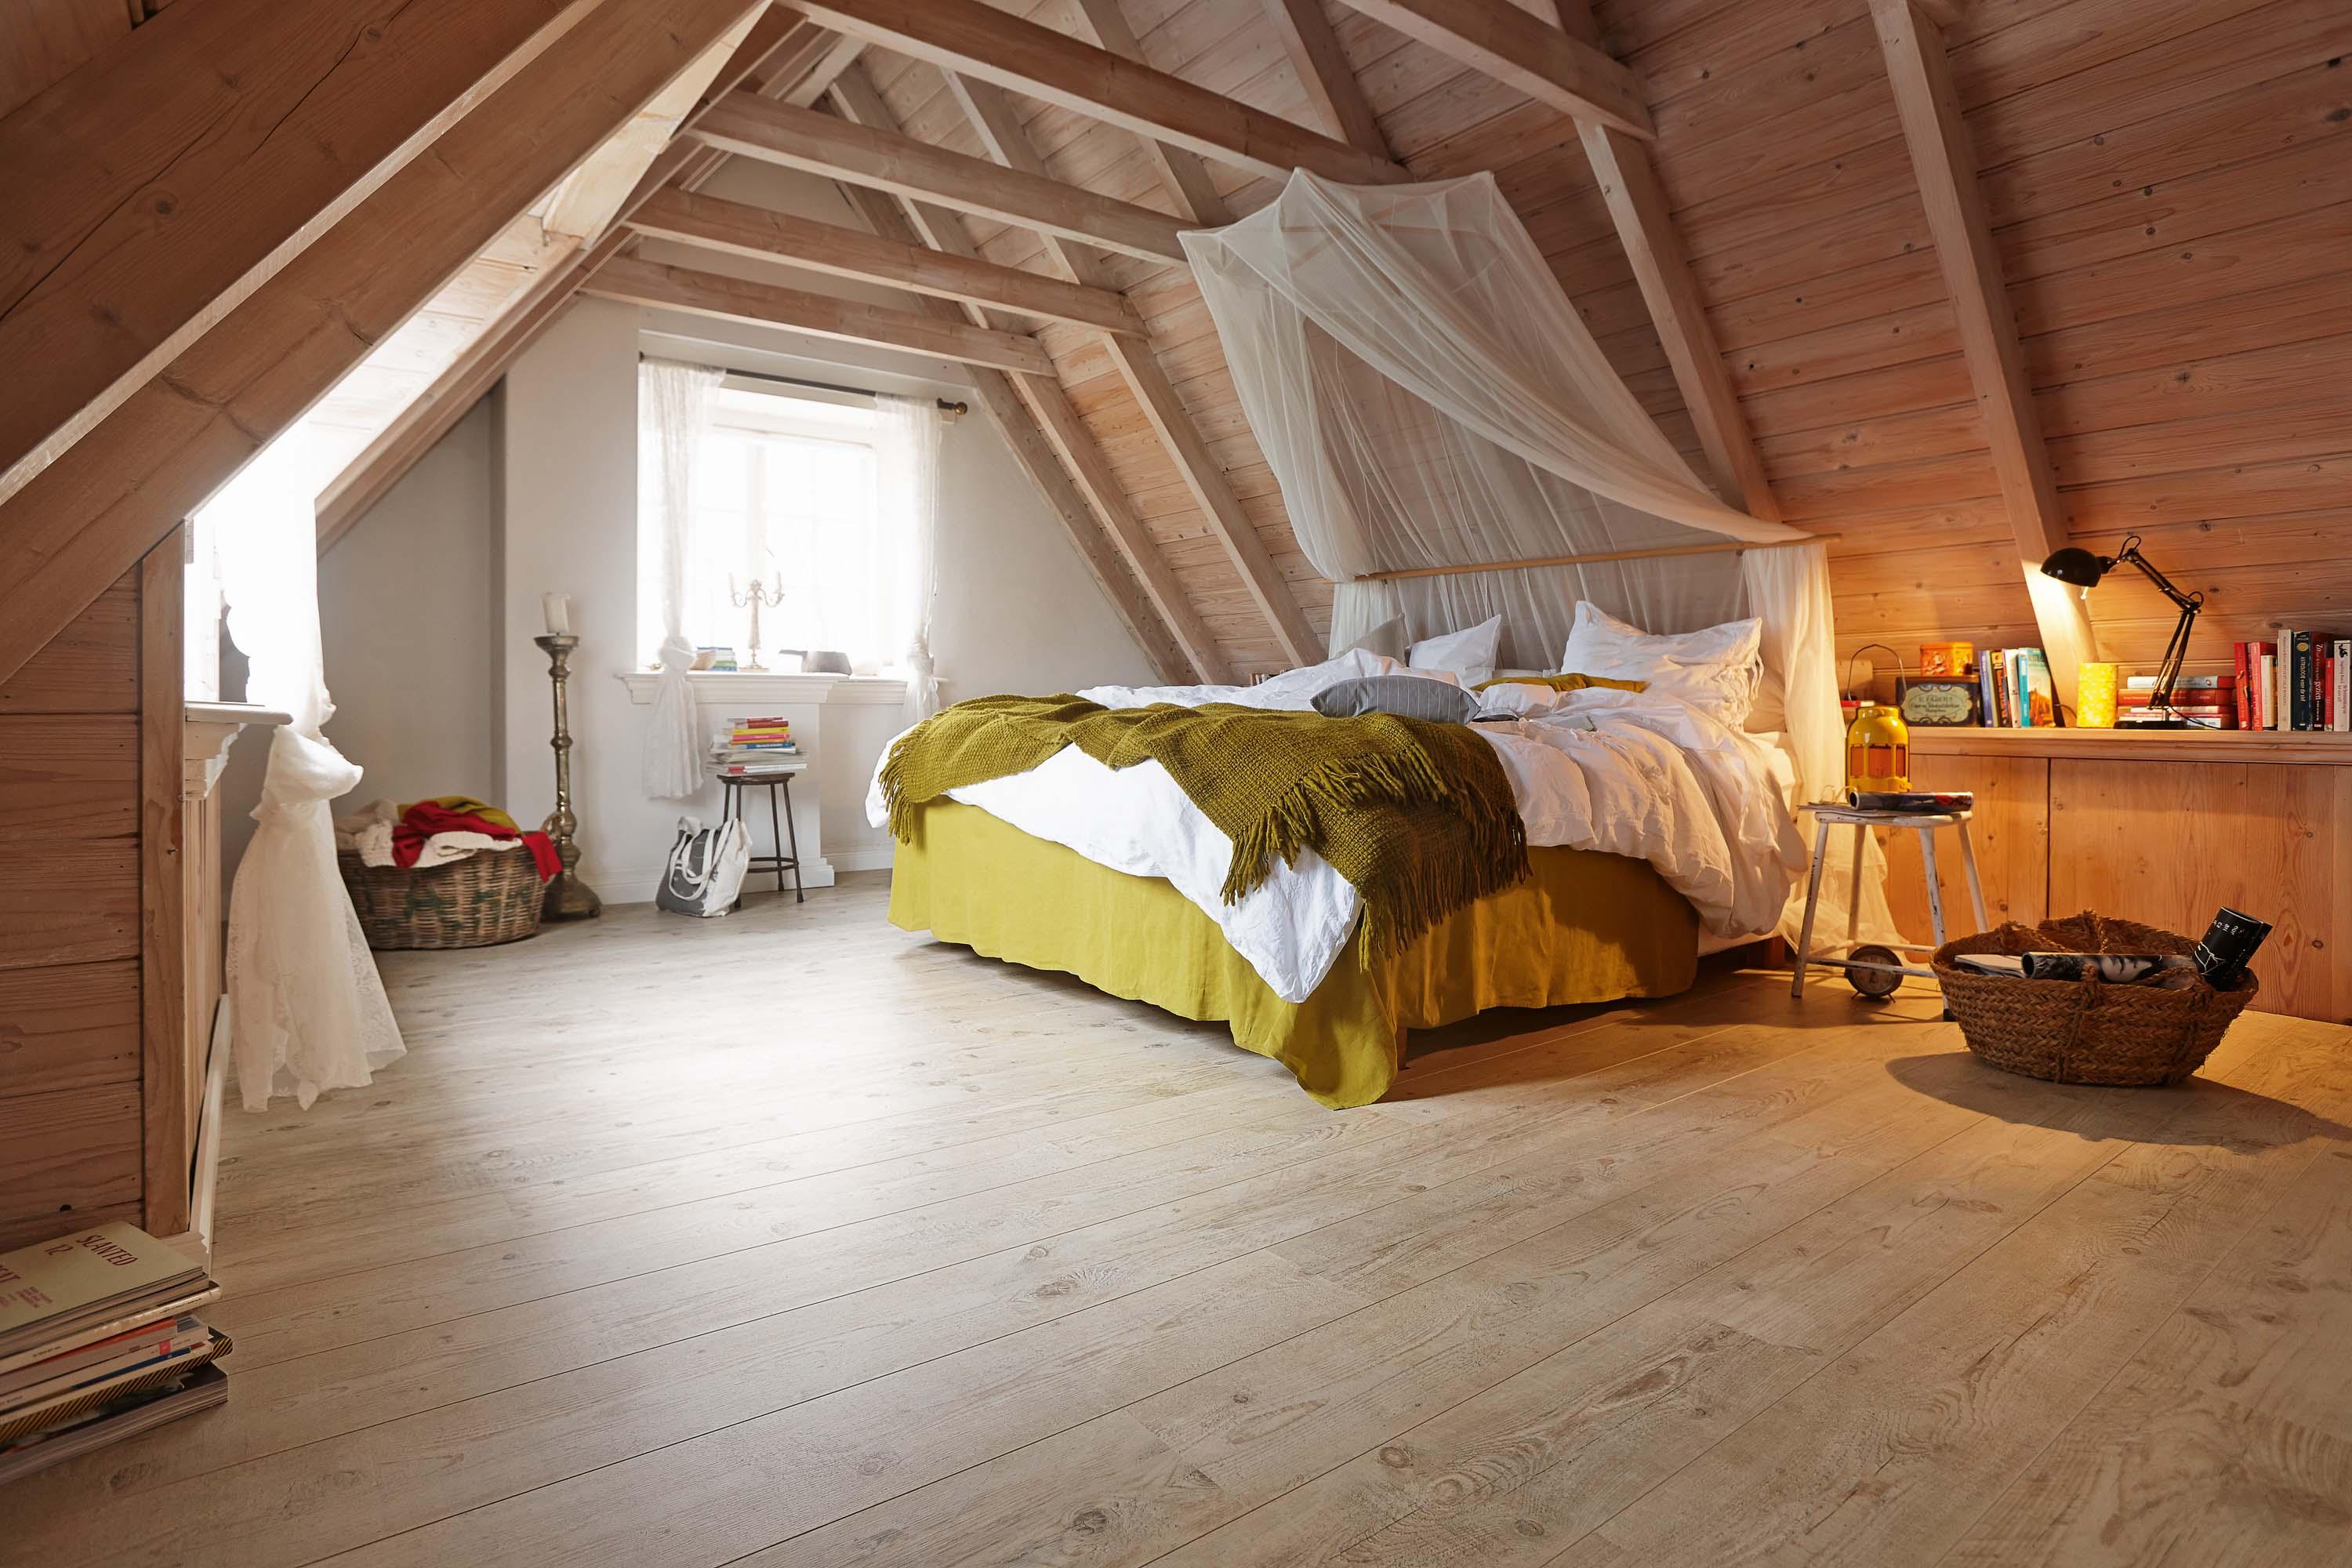 Schlafzimmer im Dachstuhl #dachausbau #himmelbett #dachbalken ©Meister